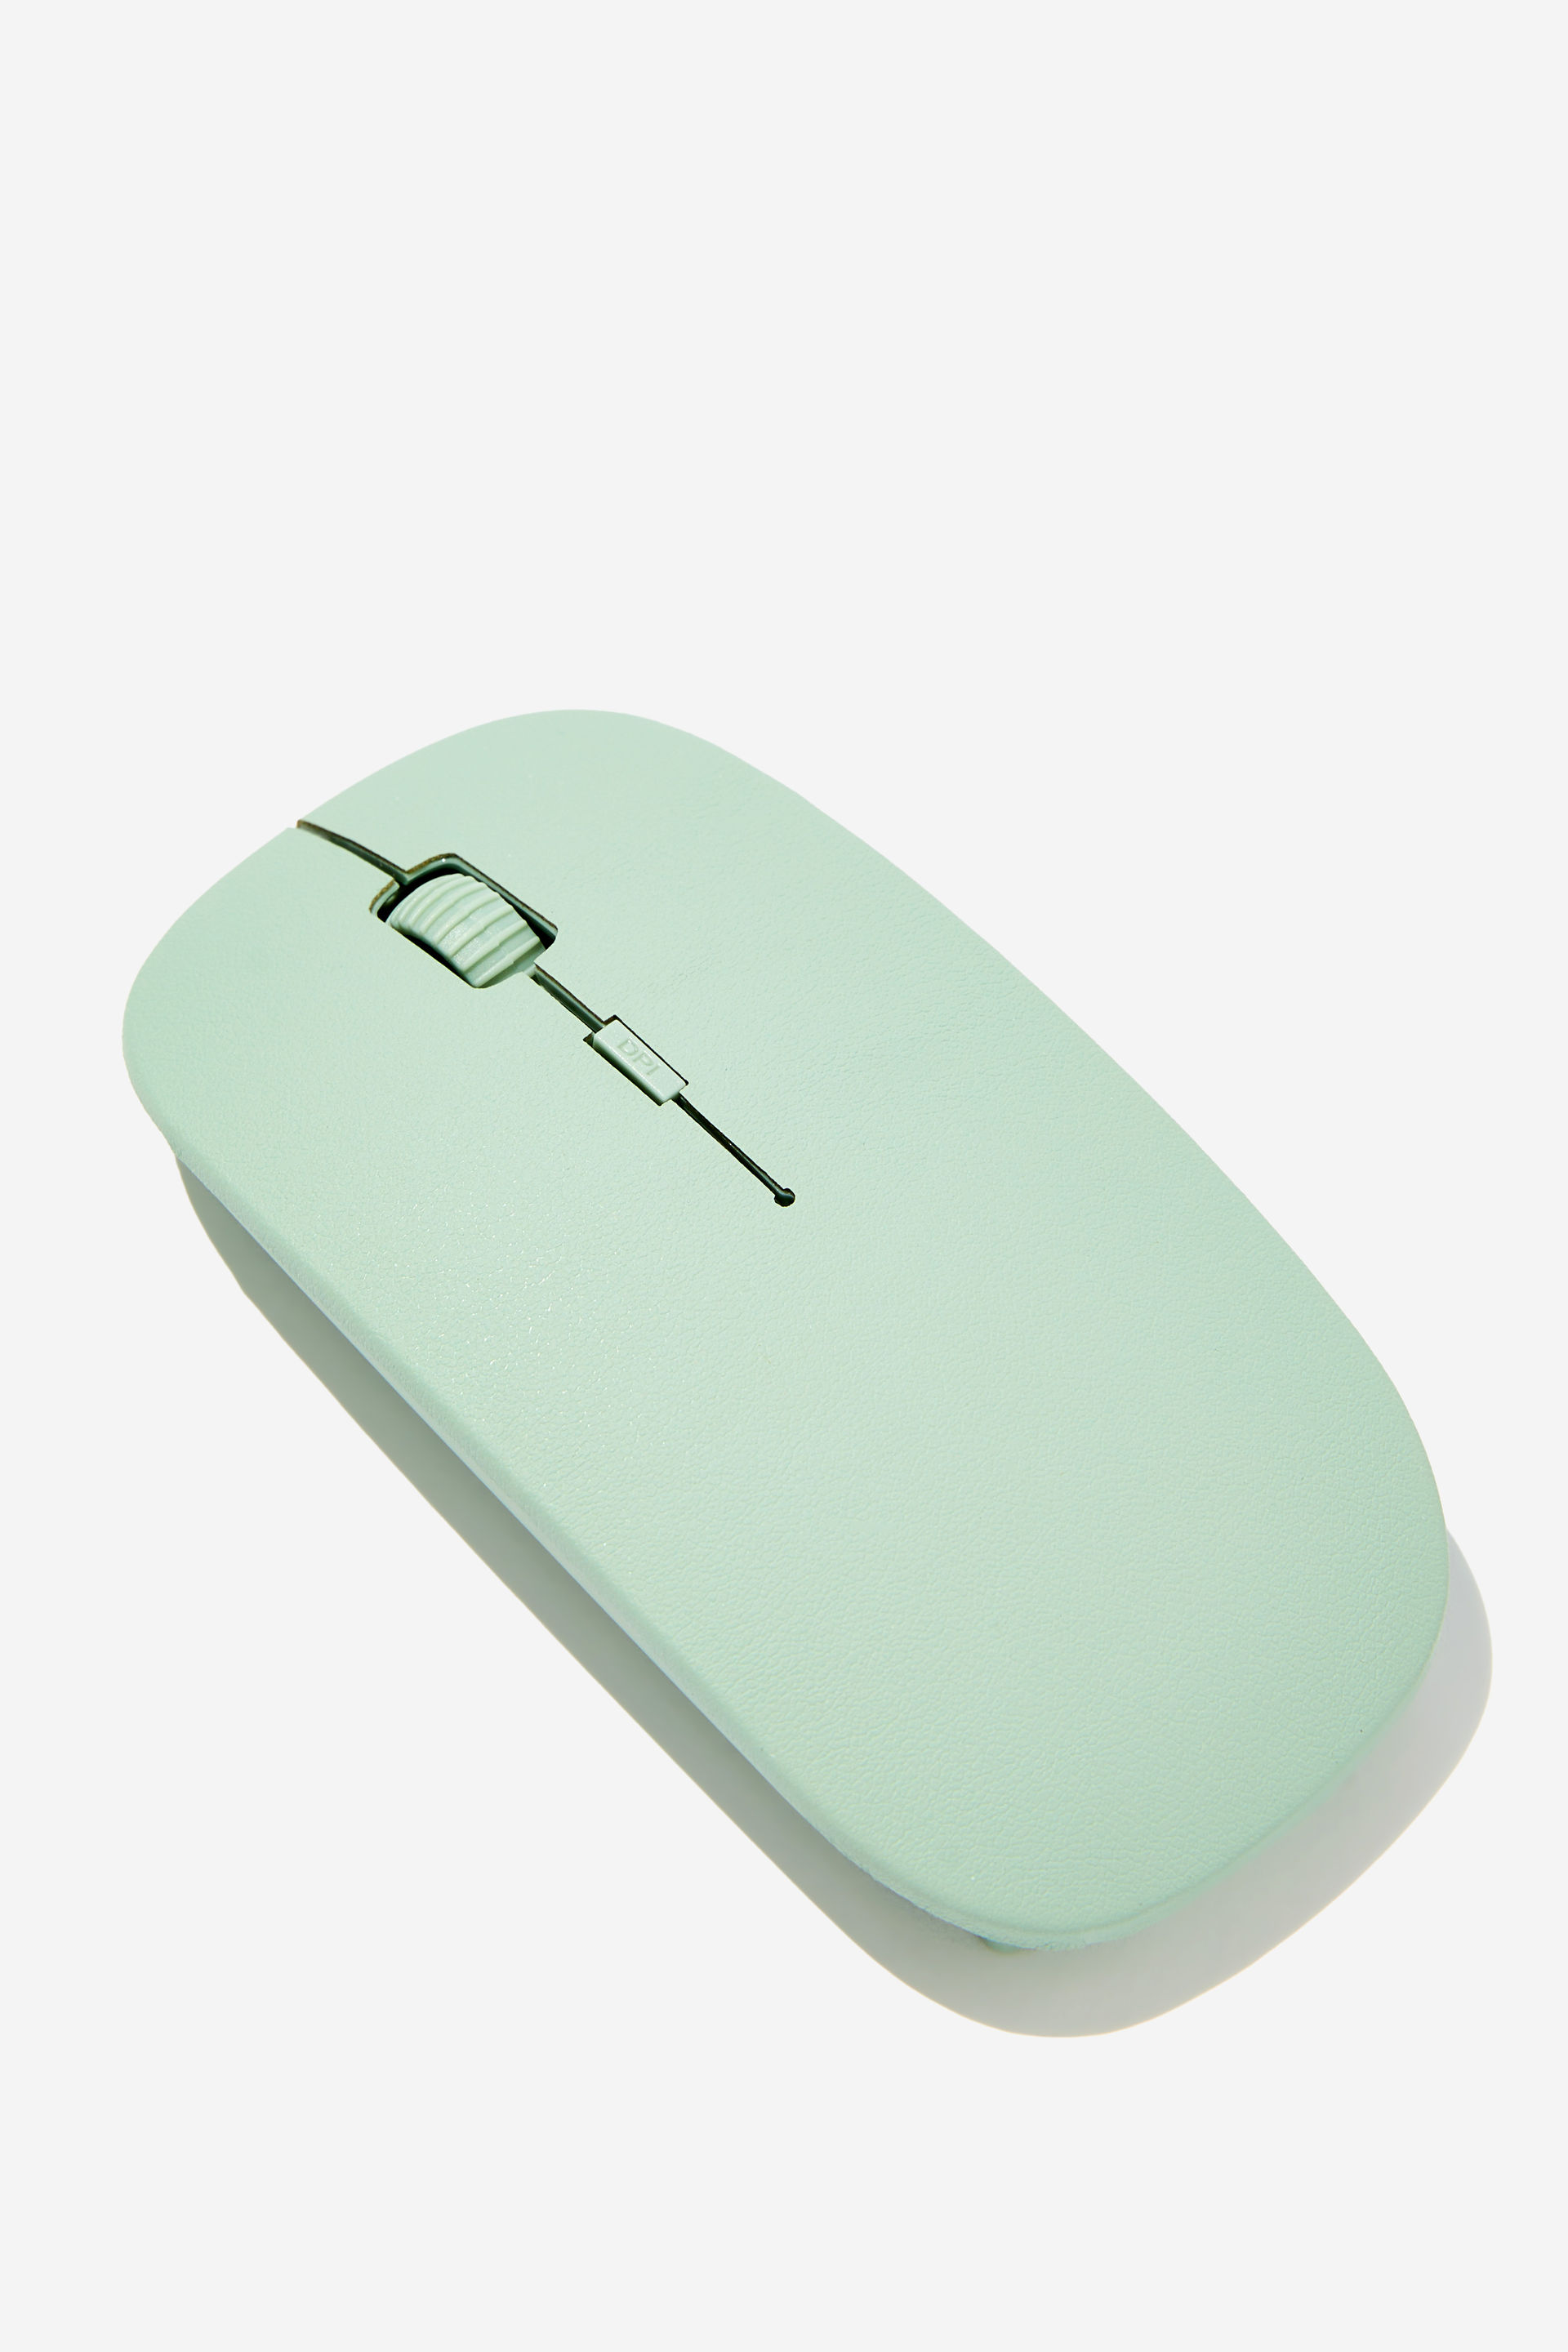 Typo - Wireless Mouse - Smoke green